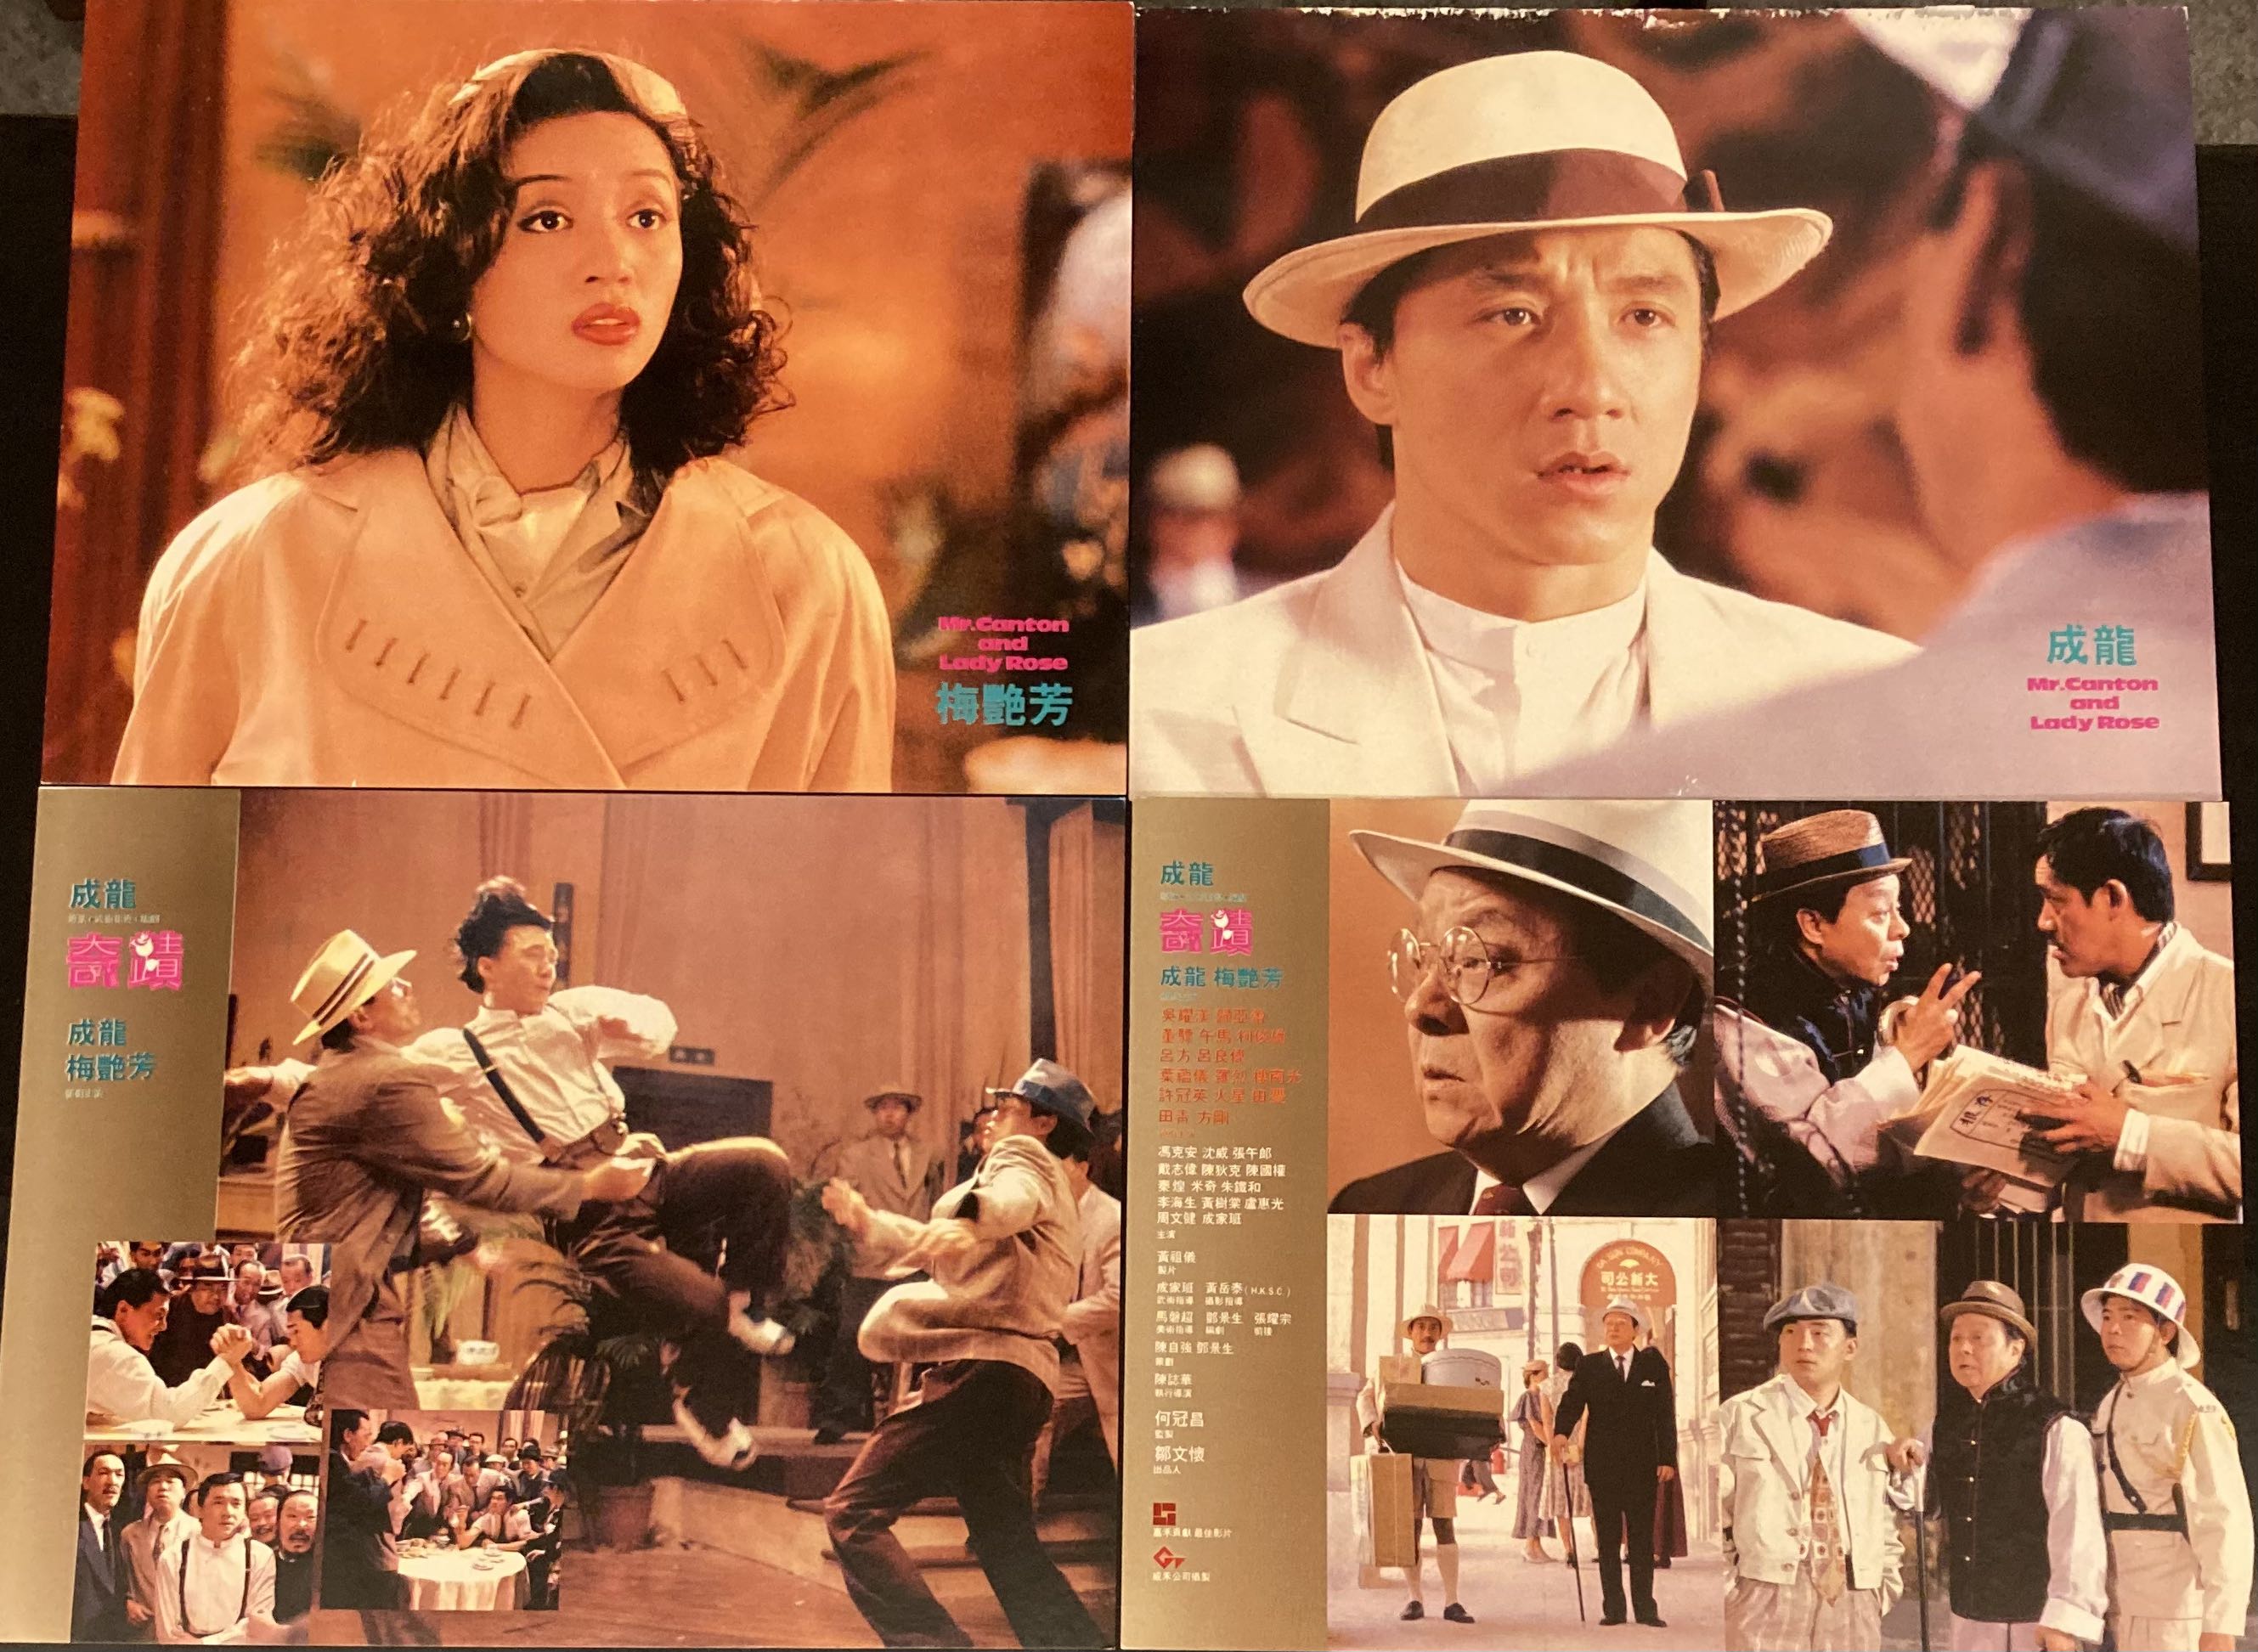 罕見港產片香港電影劇照- 奇蹟1989年, 興趣及遊戲, 收藏品及紀念品 